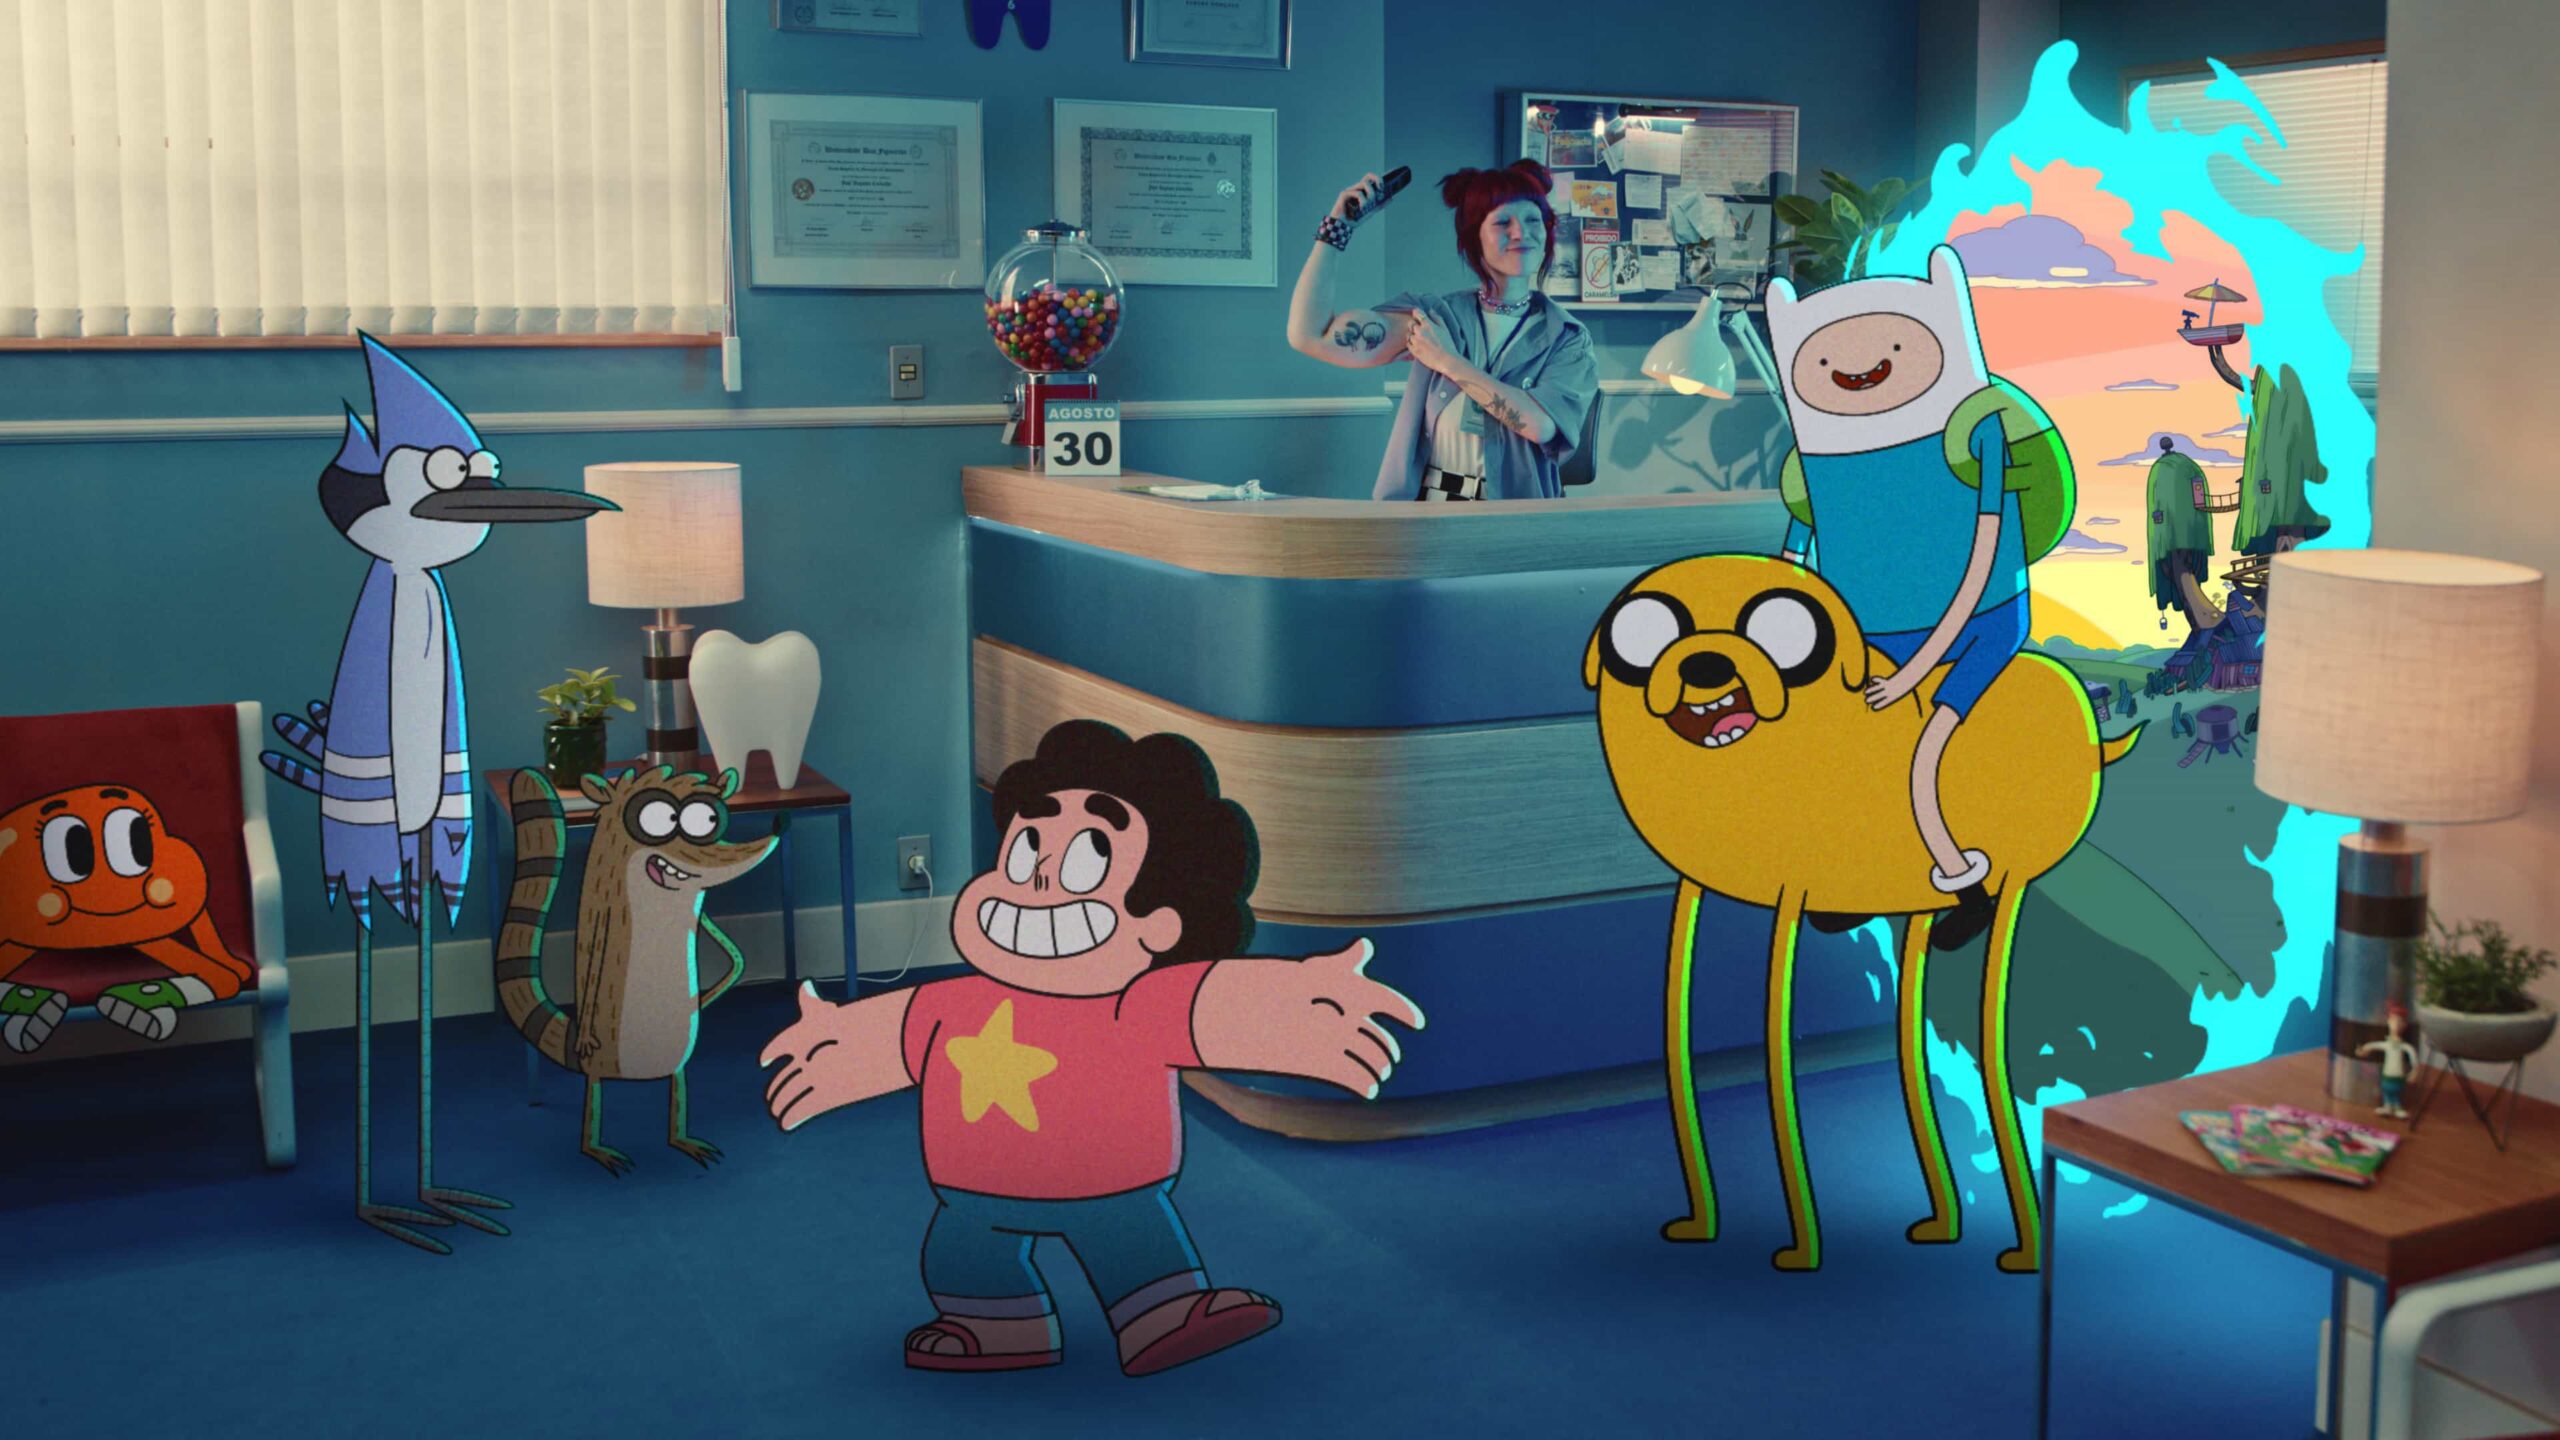 Cartoon Network convida gerações de fãs para celebrar 30 anos - Portal  Making Of